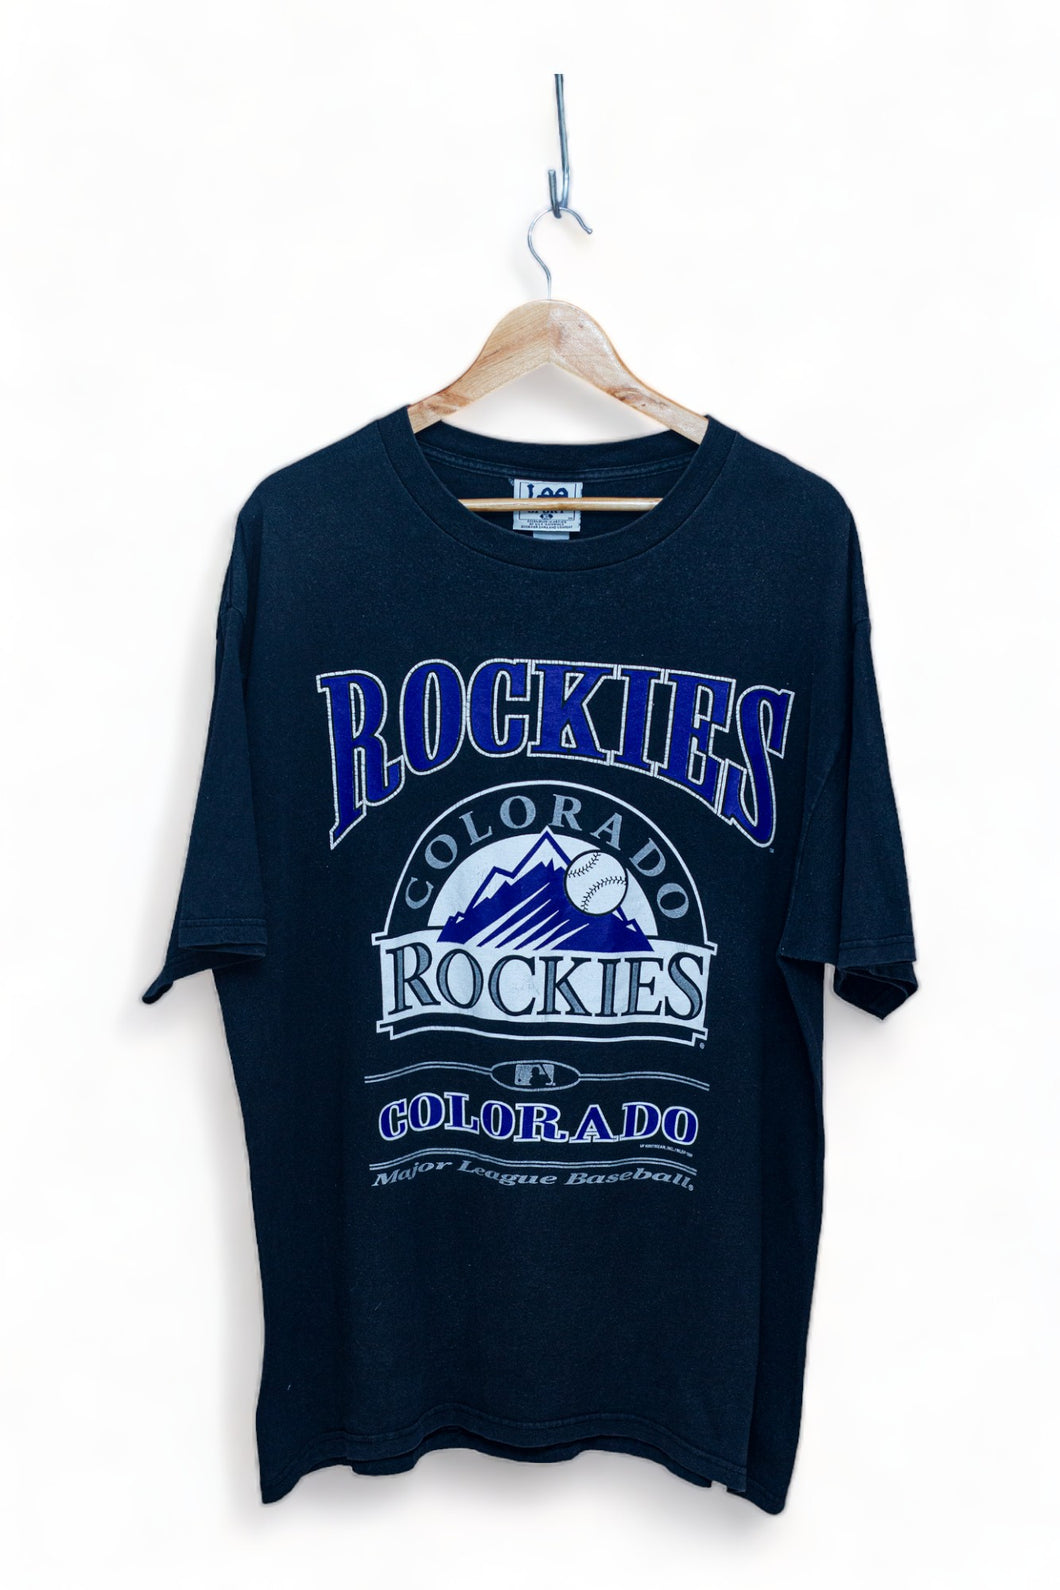 Colorado Rockies Team Graphic  MLB T-Shirt (XL)